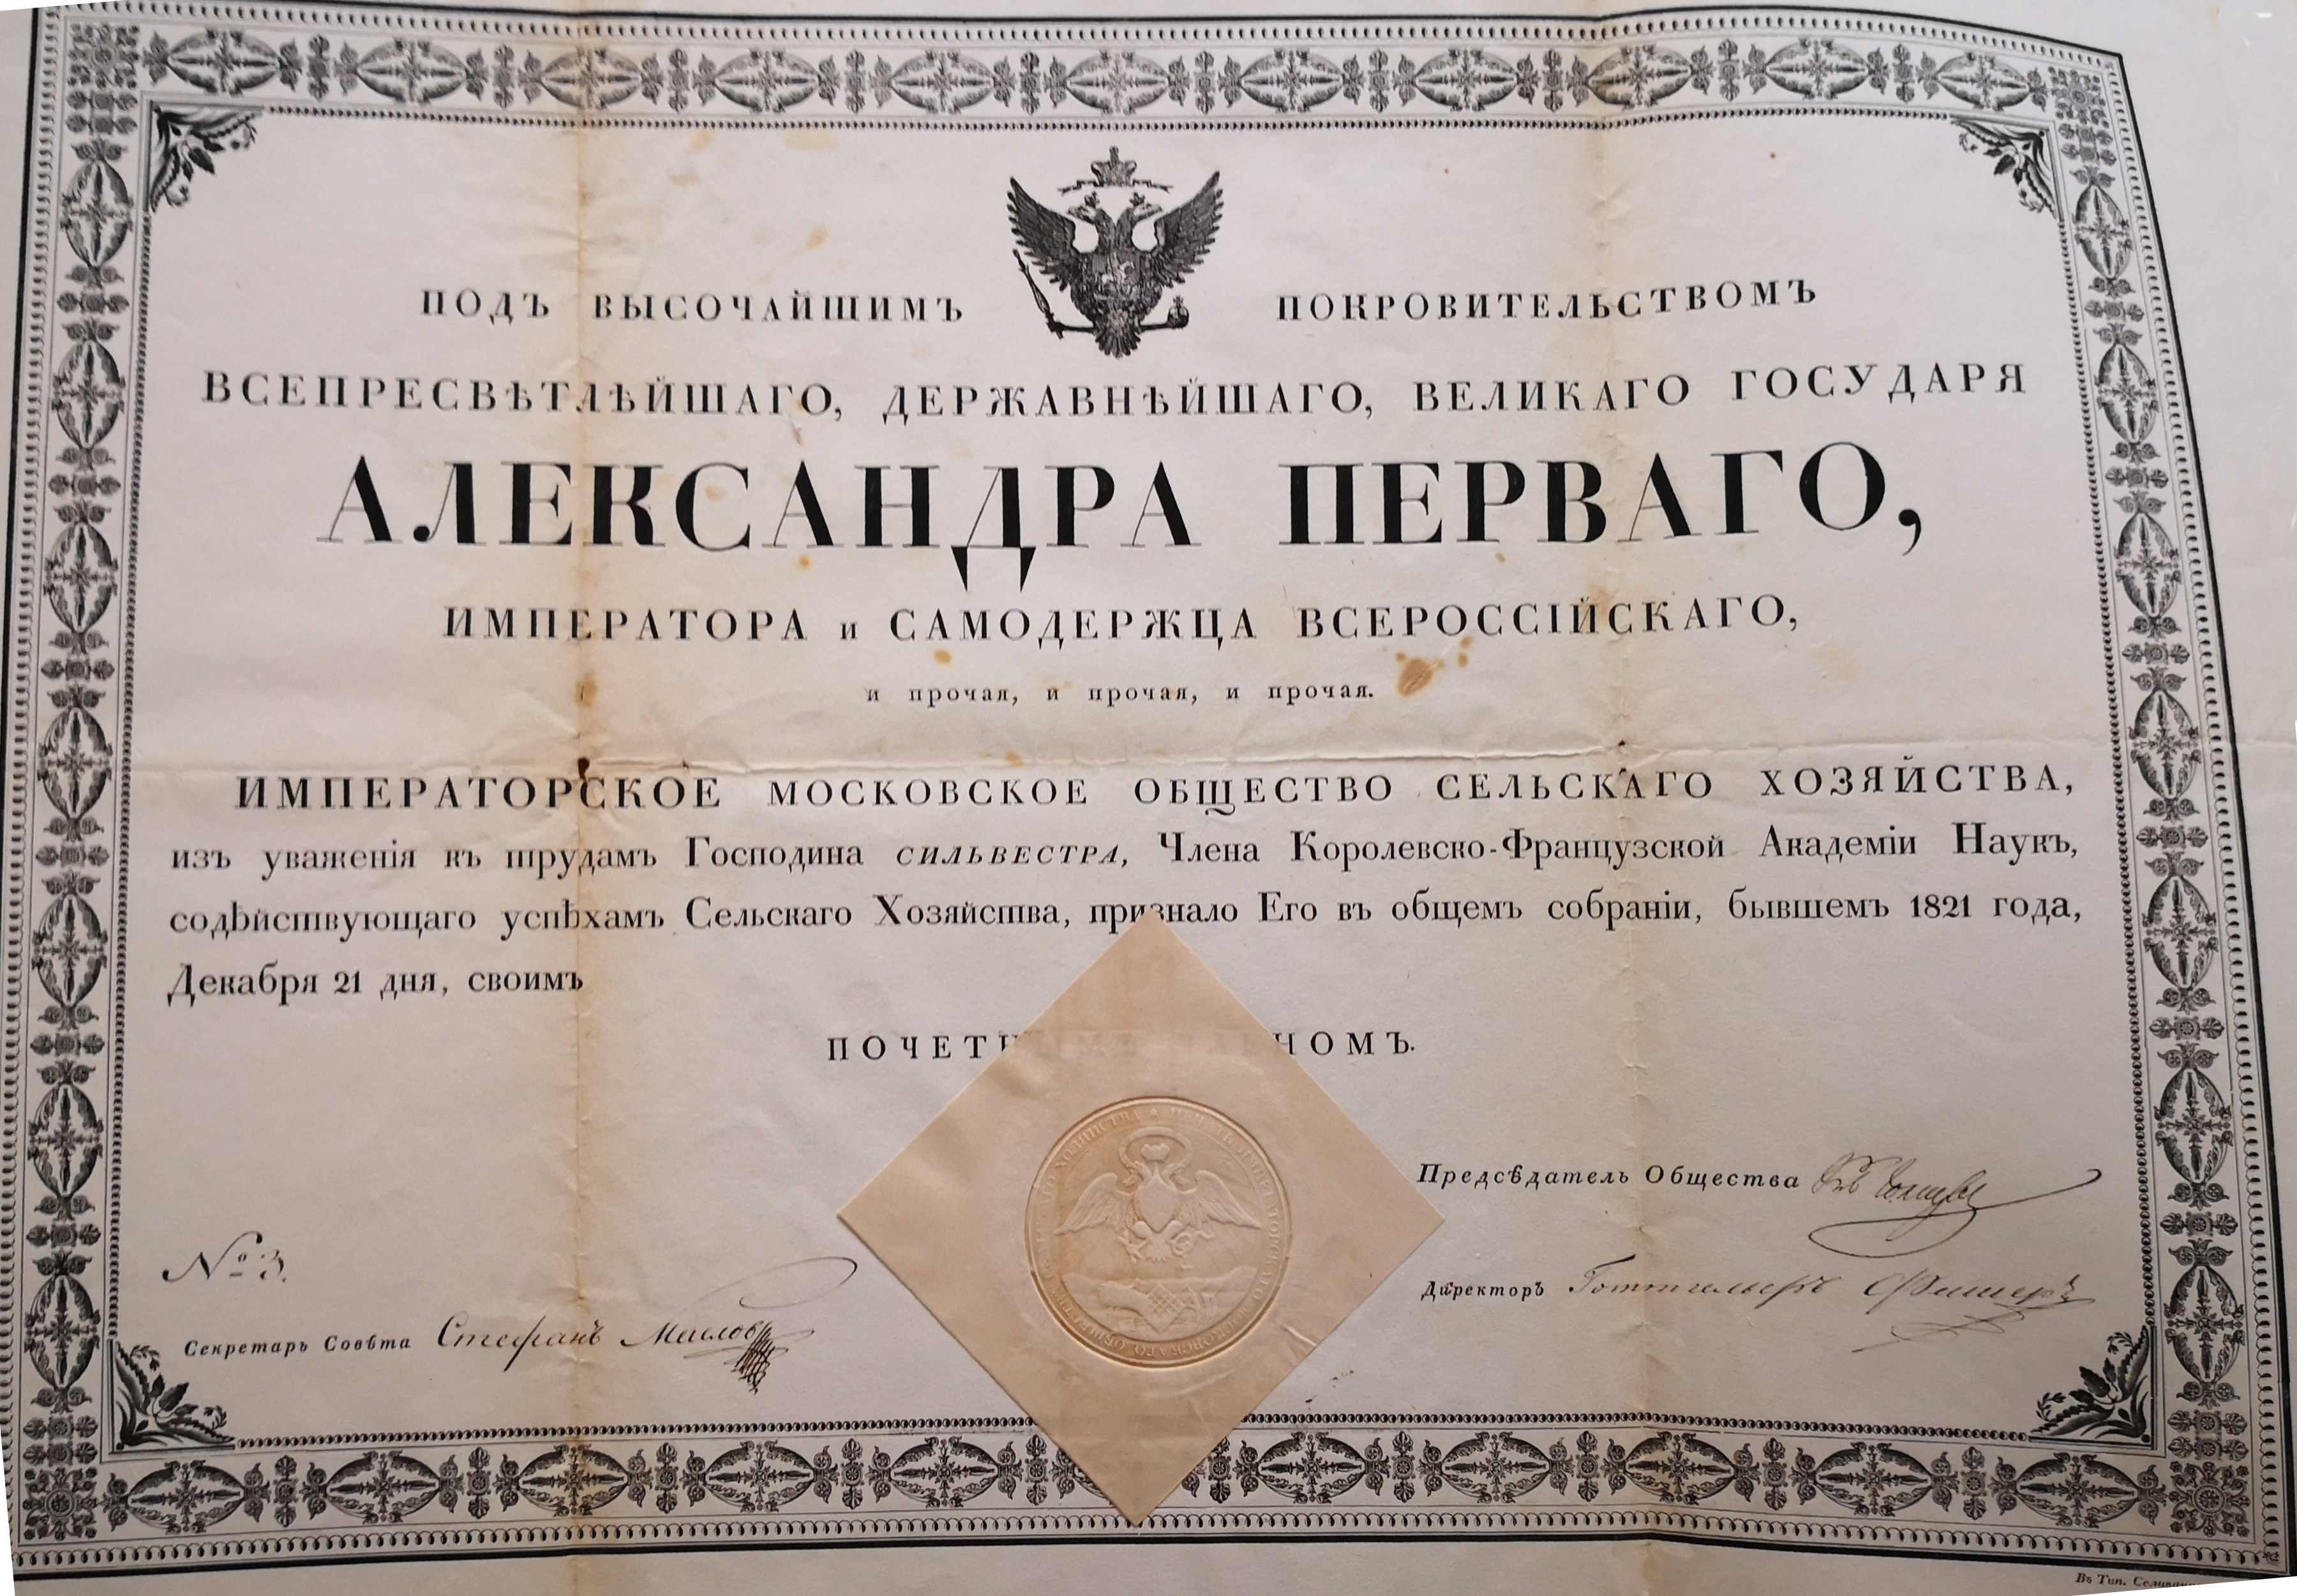  Diplôme de membre de la Société d'Agriculture Impériale de Moscou - Document 1